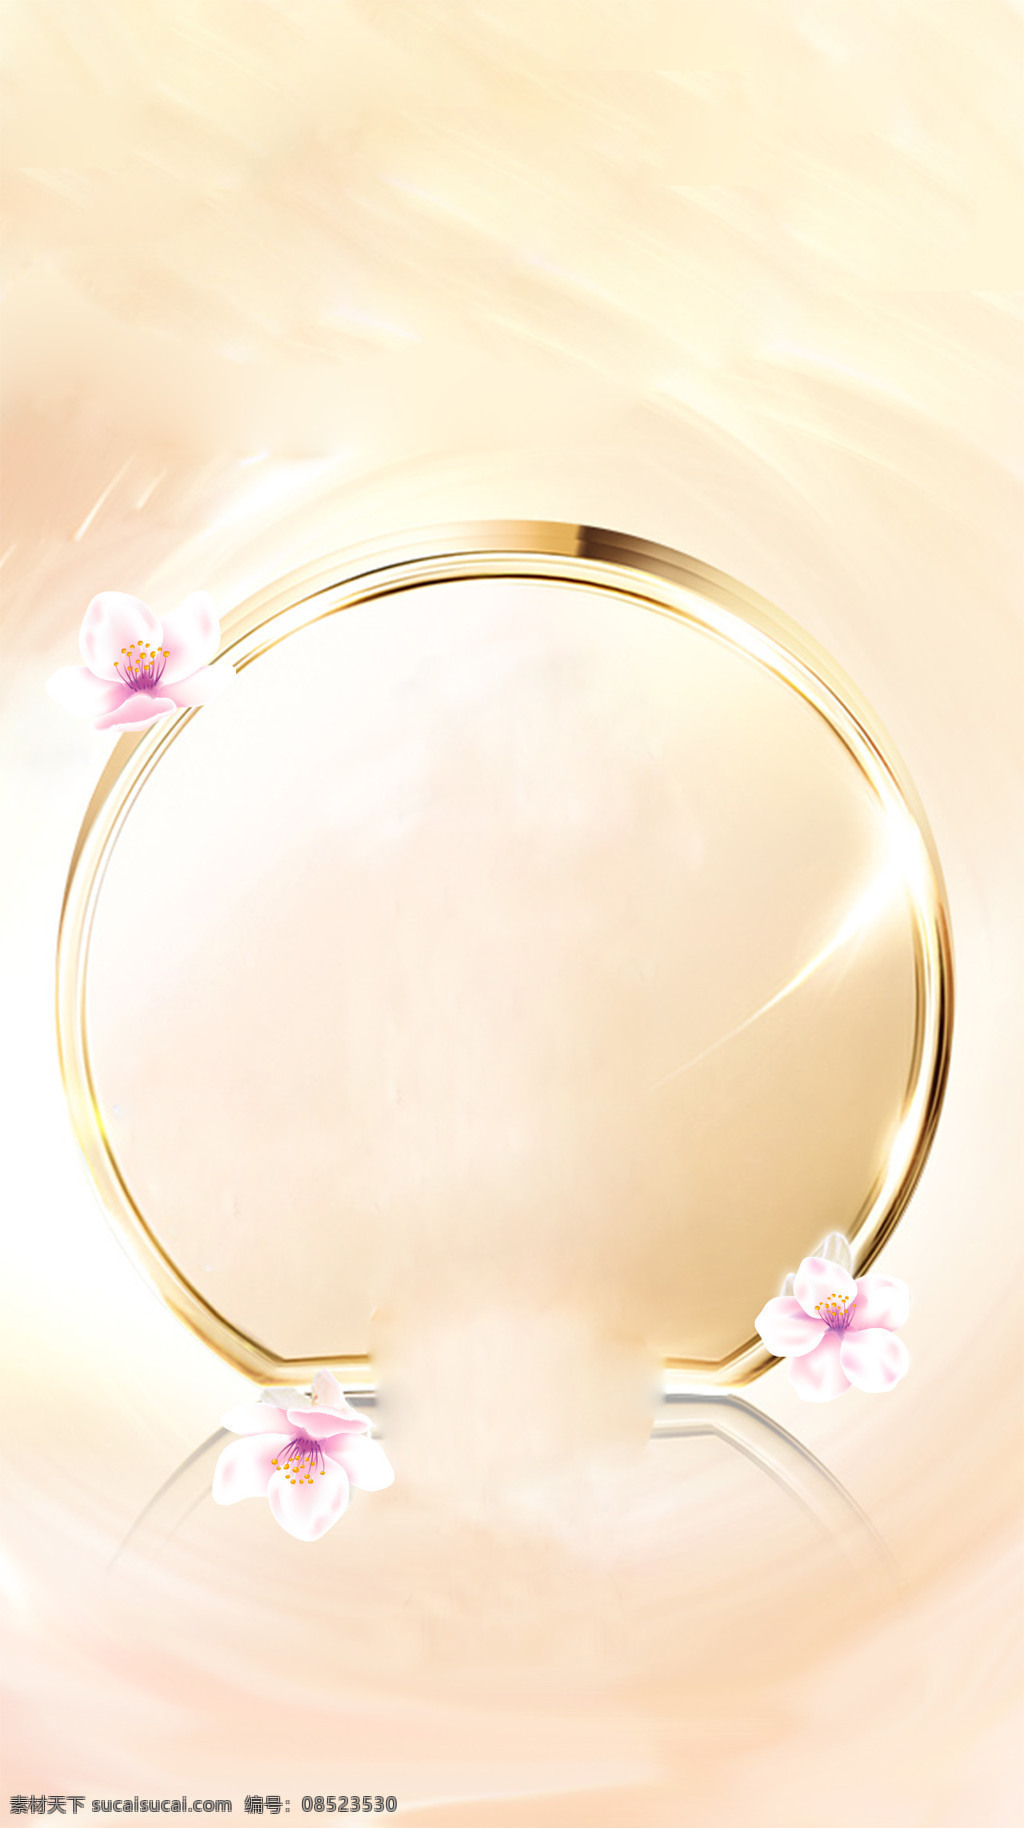 粉色 雪花 金色 圈圈 h5 背景 手绘 白色 花朵 金色圈圈 h5背景